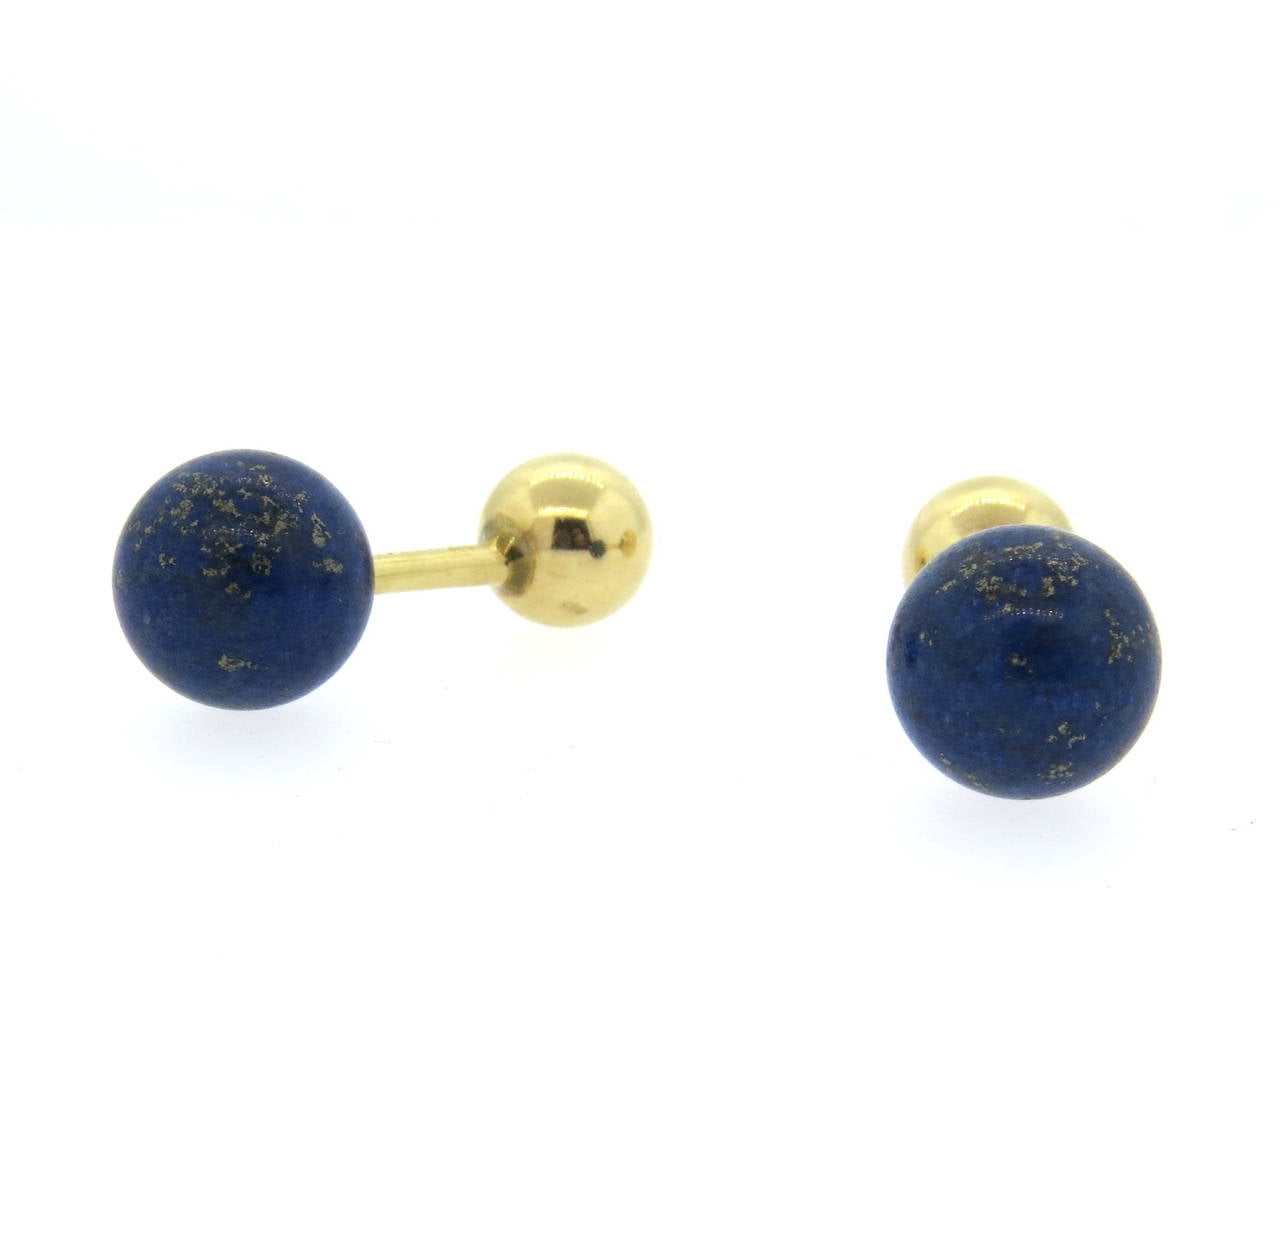 18k gold cufflinks featuring 13mm lapis lazuli top. Weight - 10.2 grams